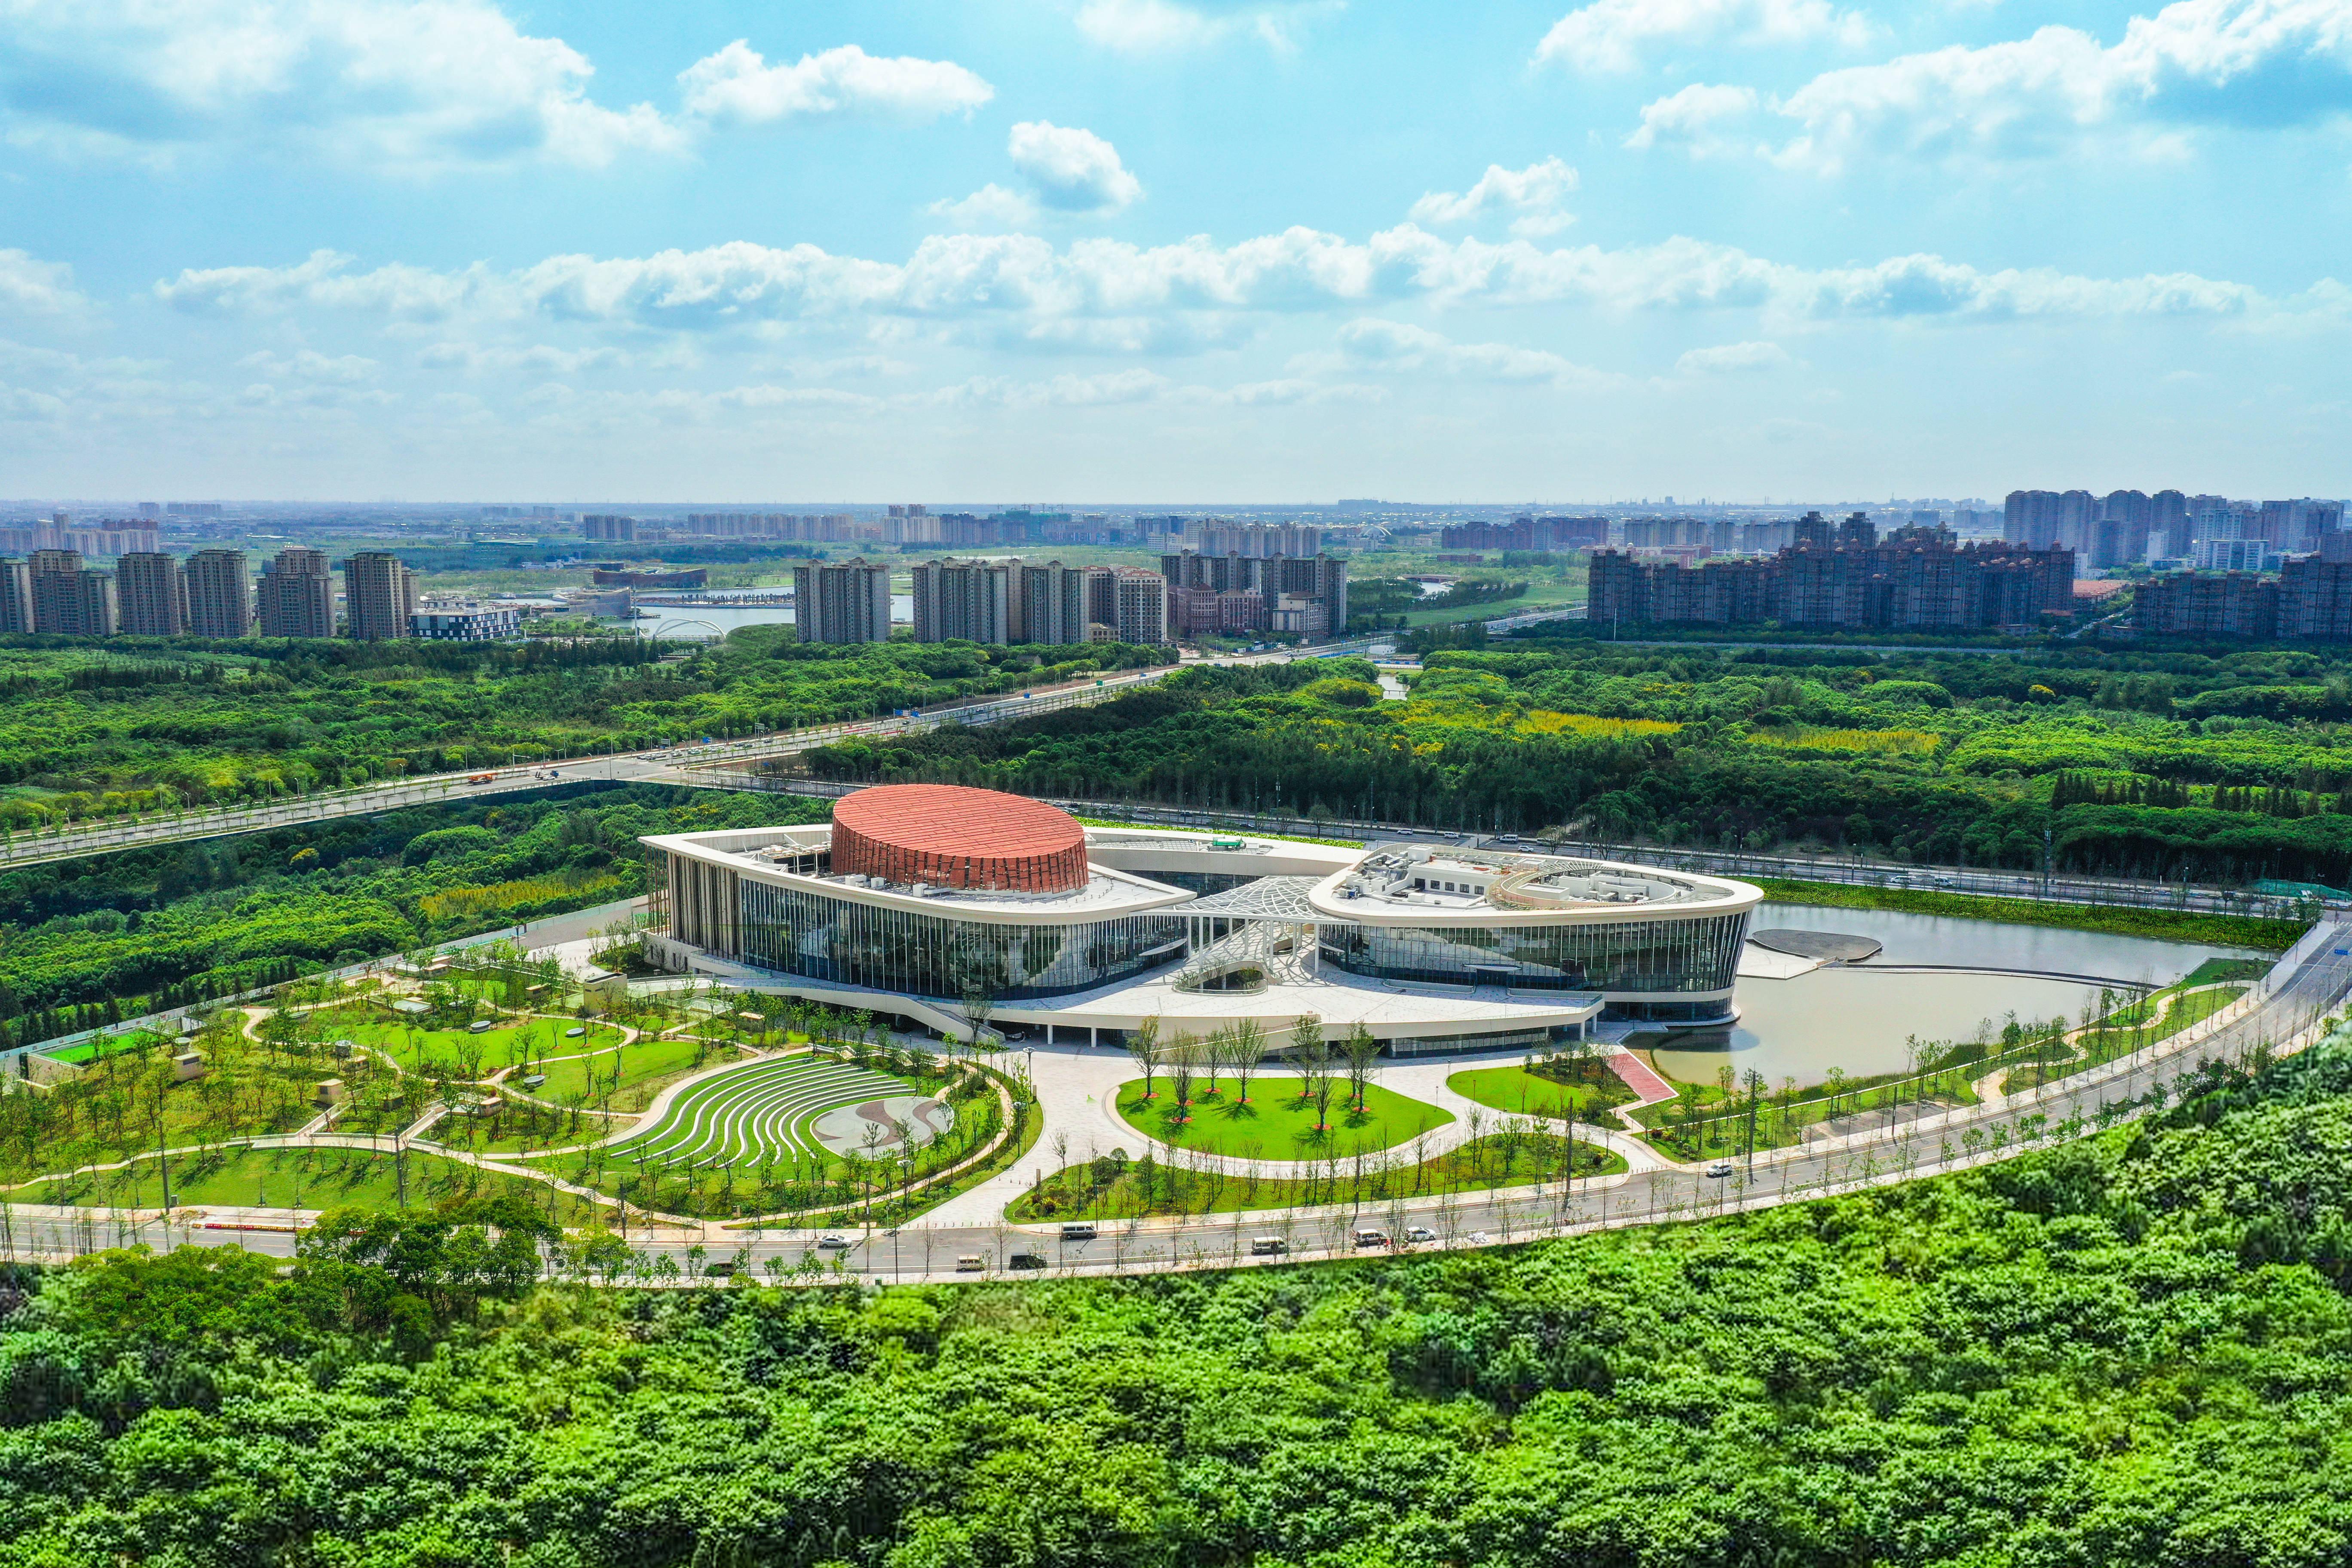 俯瞰上海之鱼,上海奉贤博物馆,东方美谷jw万豪酒店等点缀在众多绿色